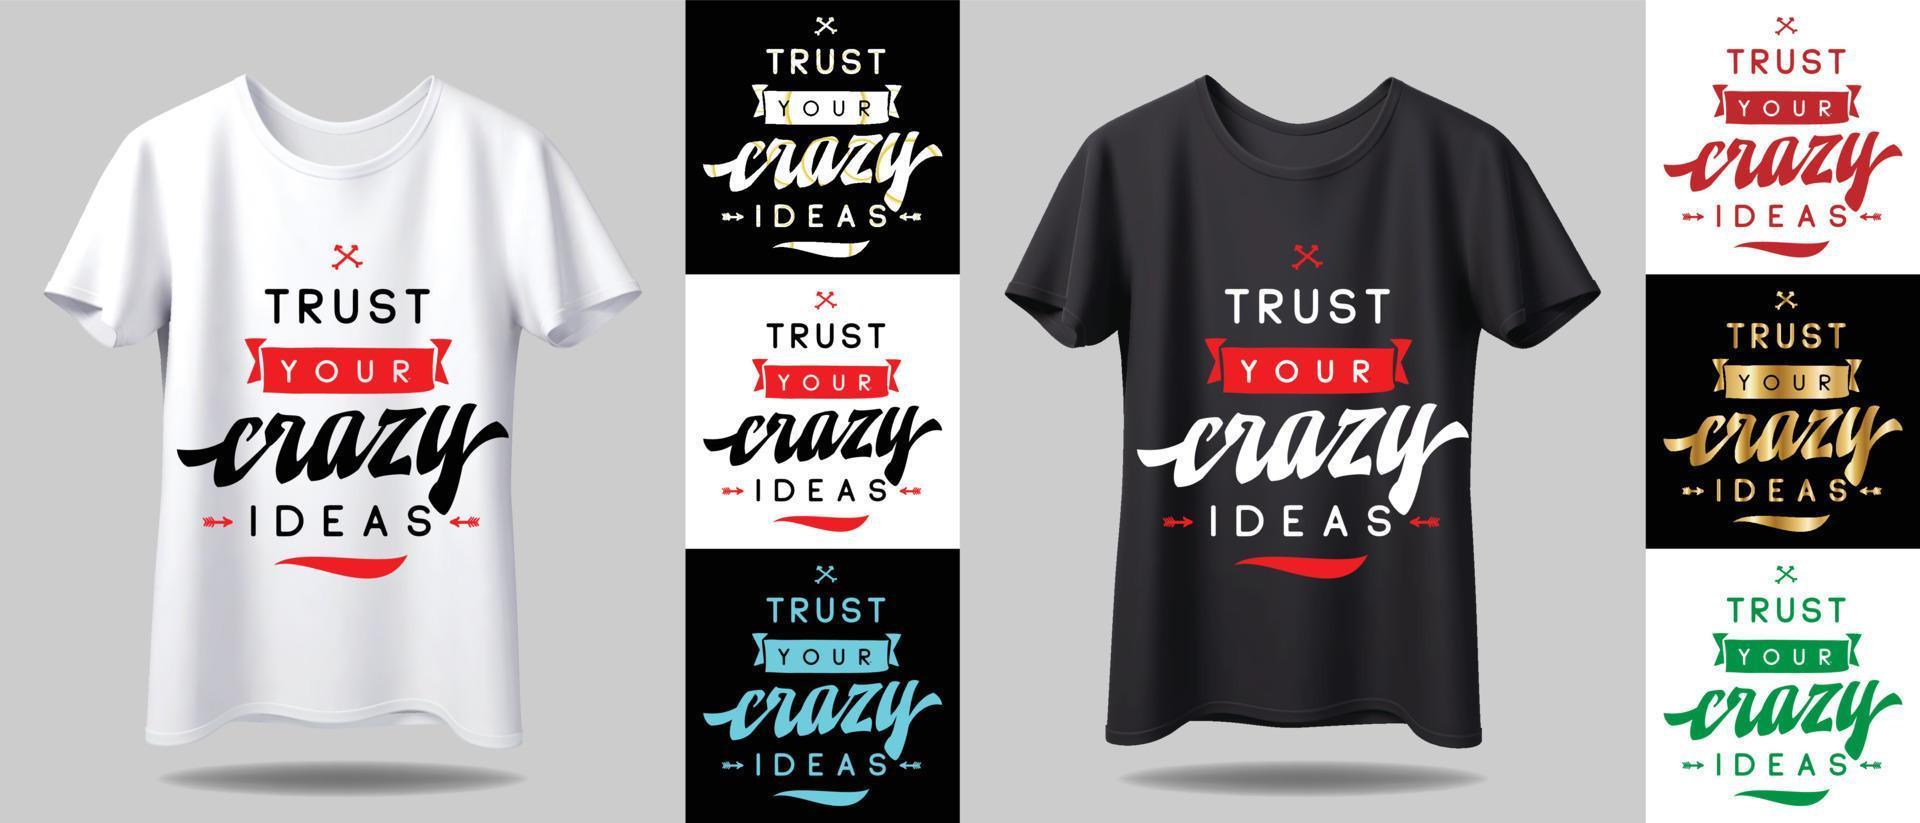 T-Shirt-Design-Modell. neues schwarz-weißes typografie-t-shirt-design mit modell in verschiedenen farben vektor